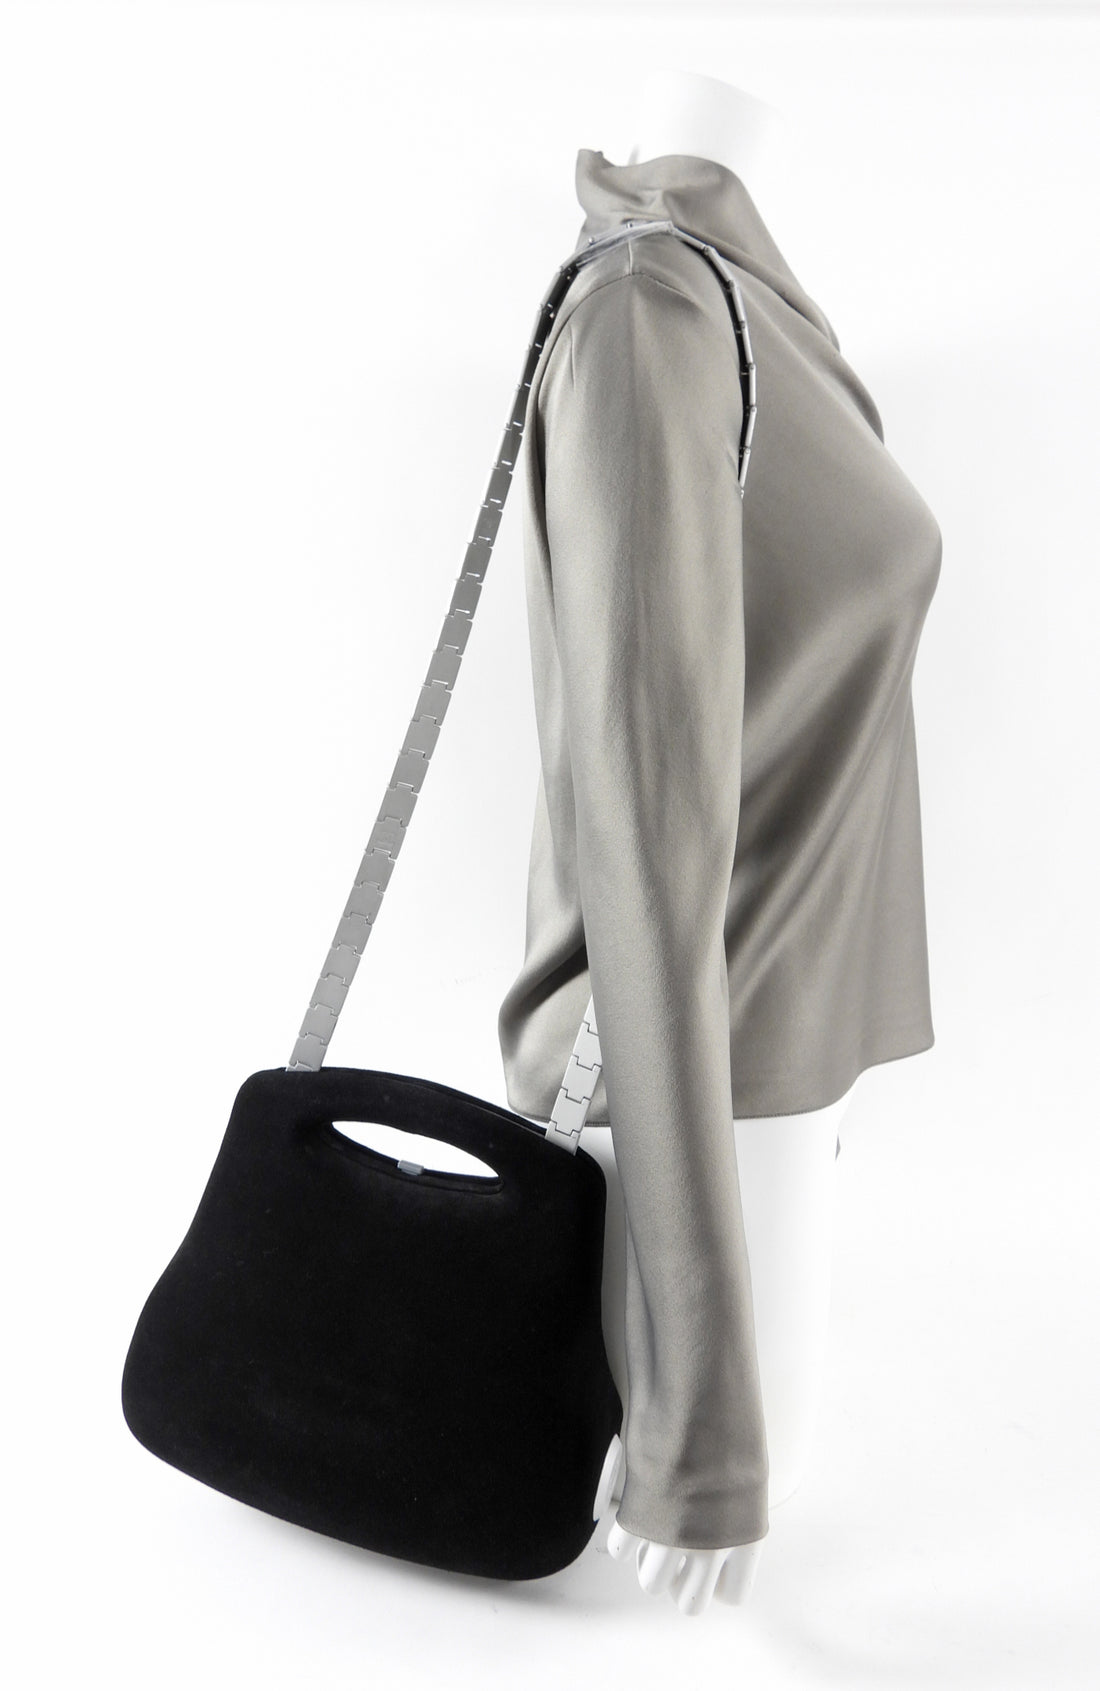 Chanel Millennium 2005 Bag - Black Satchels, Handbags - CHA172249